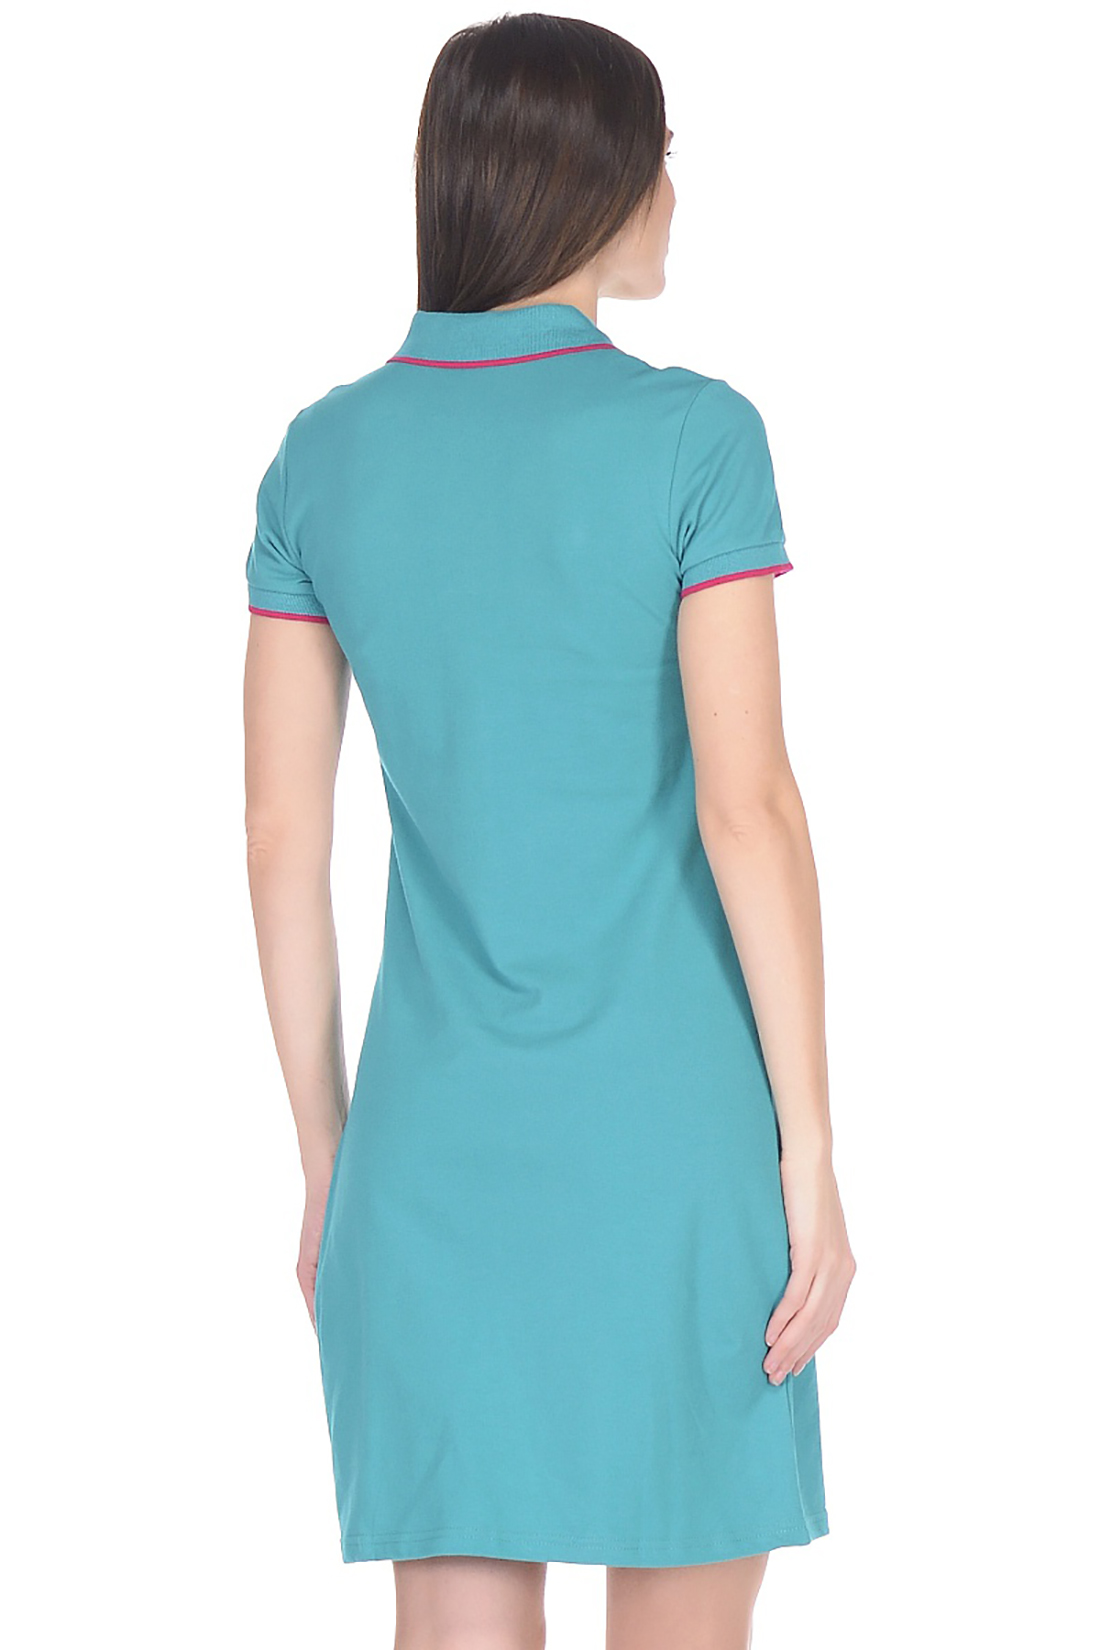 Платье-поло с контрастной отделкой (арт. baon B458201), размер XXL, цвет зеленый Платье-поло с контрастной отделкой (арт. baon B458201) - фото 2